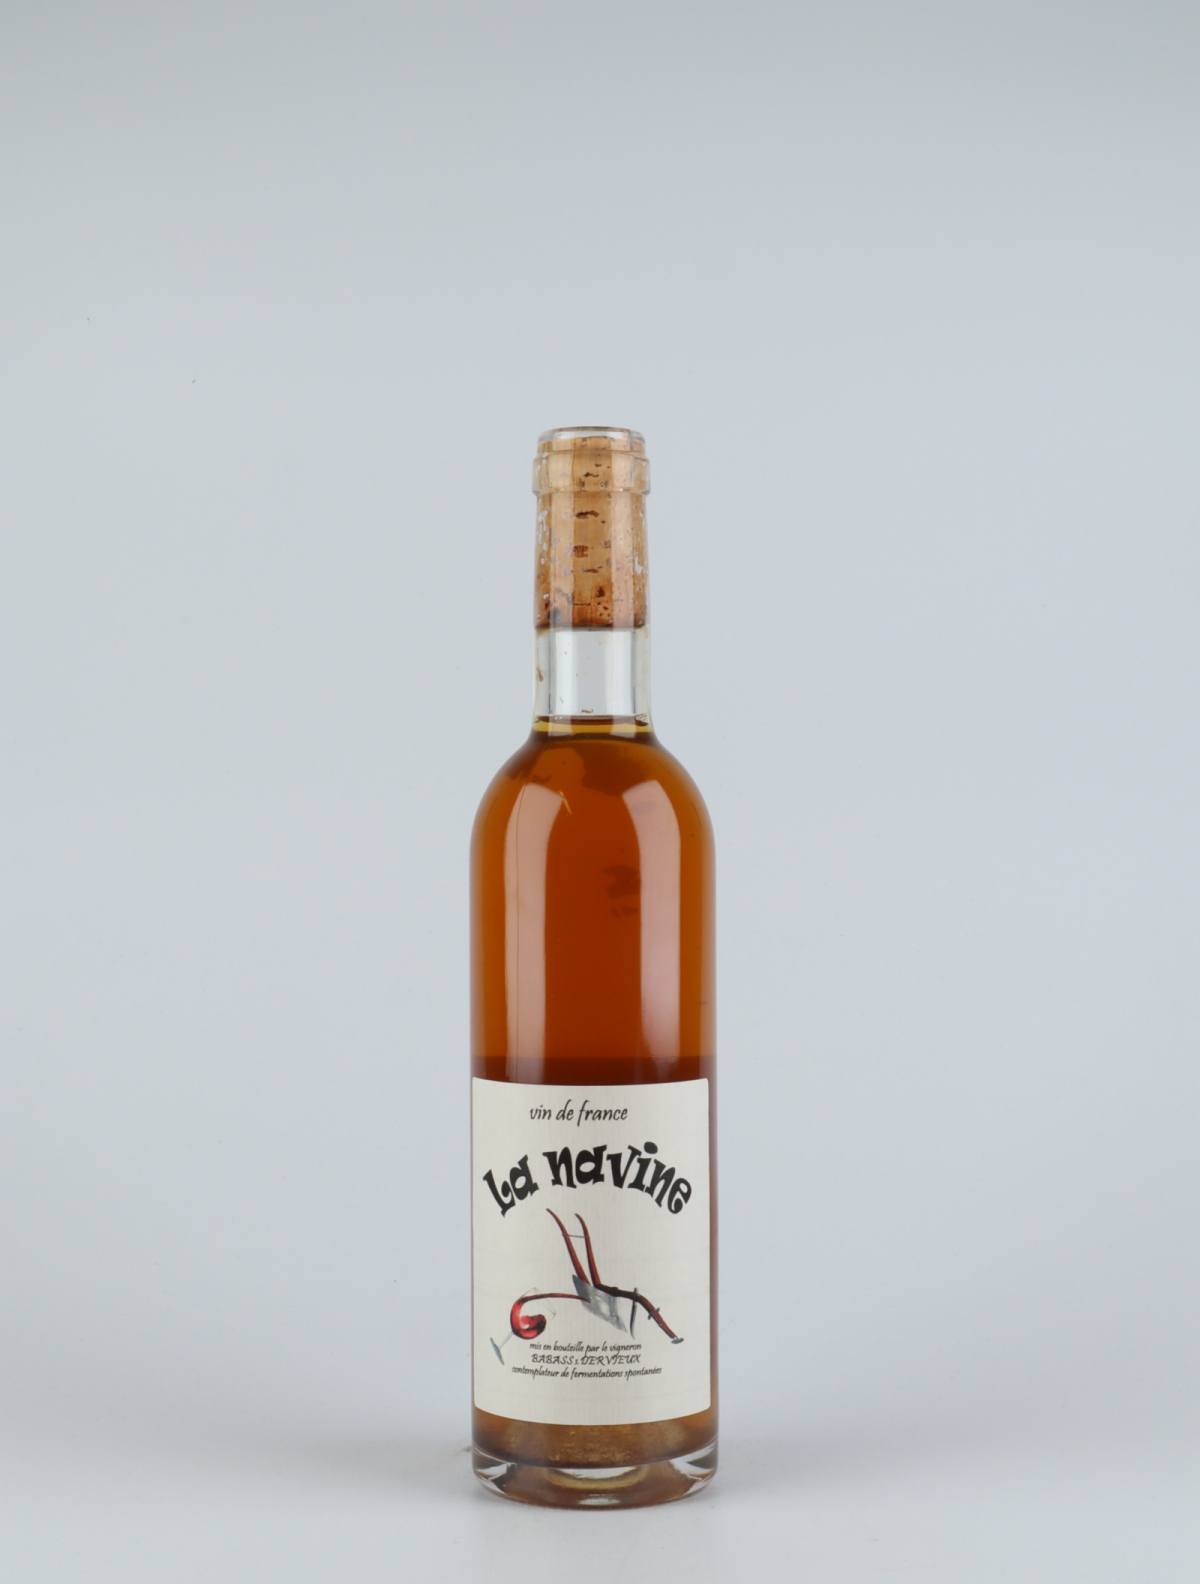 A bottle 2011 La Navine White wine from Les Vignes de Babass, Loire in France